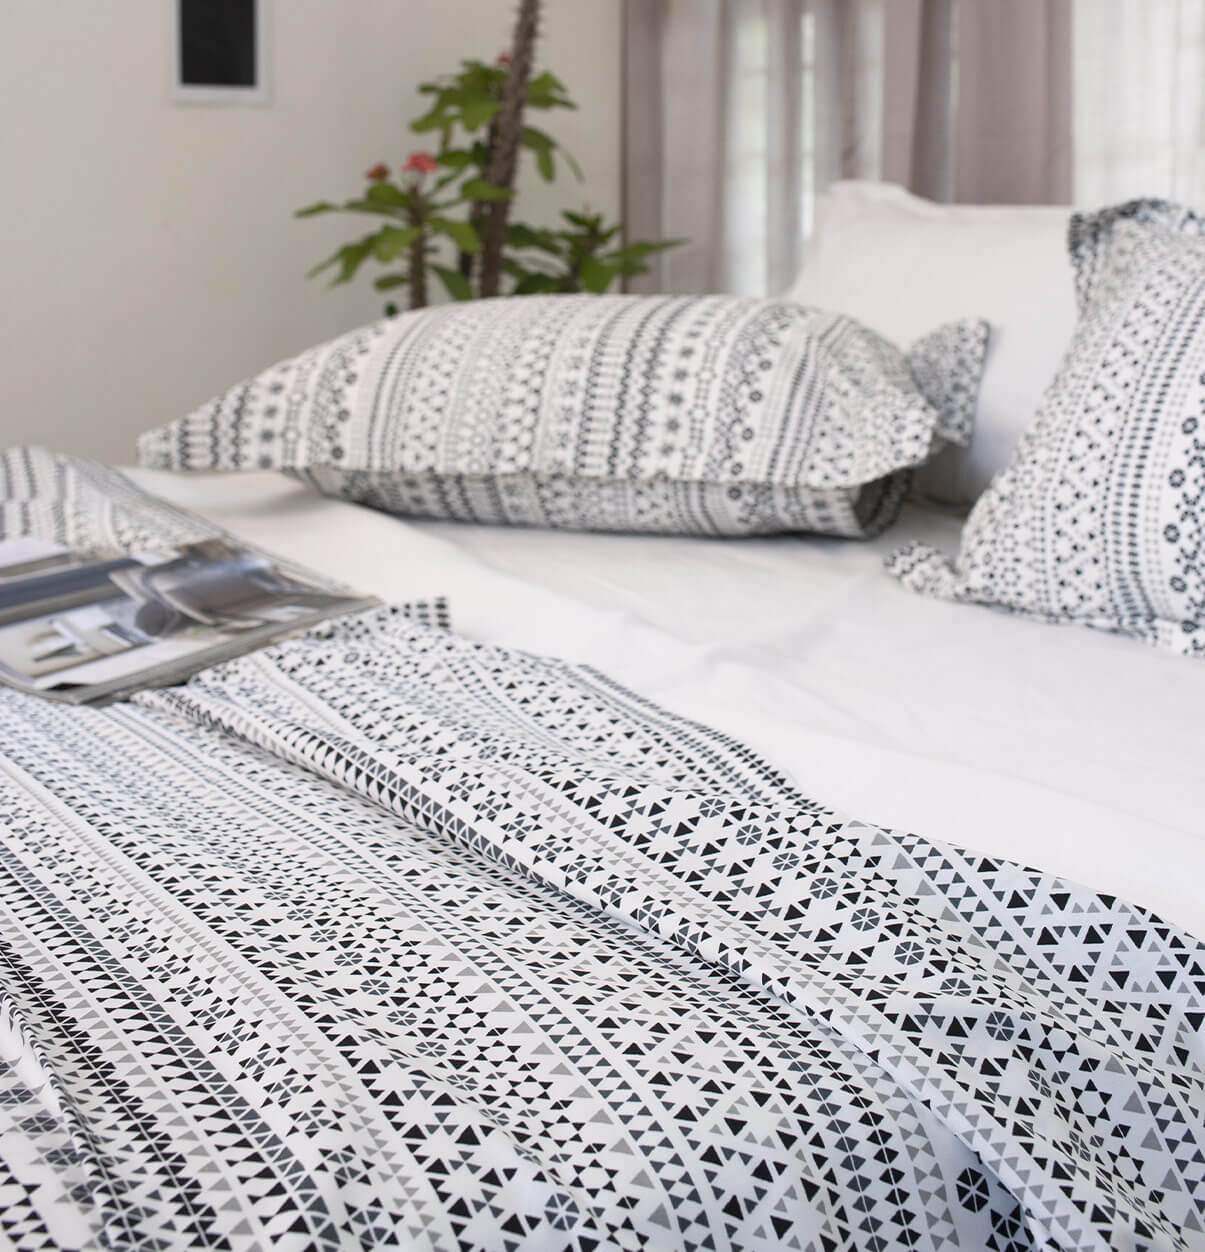 Ga giường màu xám họa tiết giảm bớt sự đơn điệu